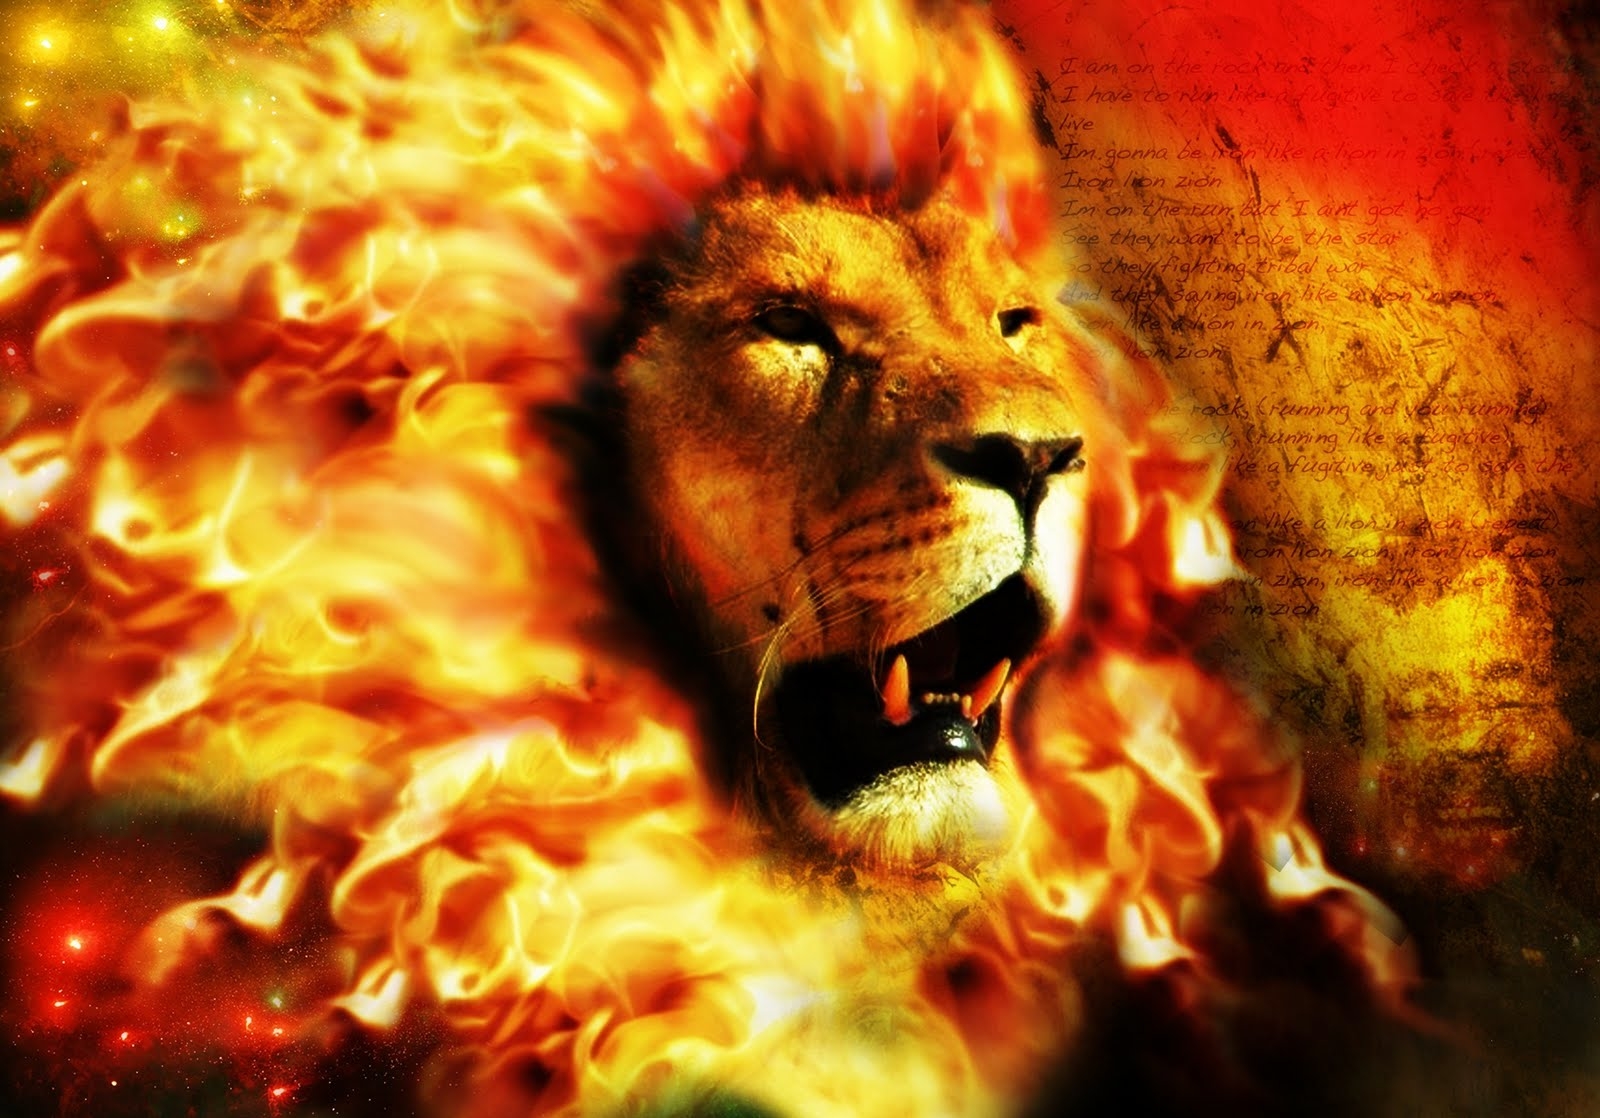 Humilhai-vos Pois Debaixo Da Potente Mão De Deus Para - Fire Lion Background Hd - HD Wallpaper 